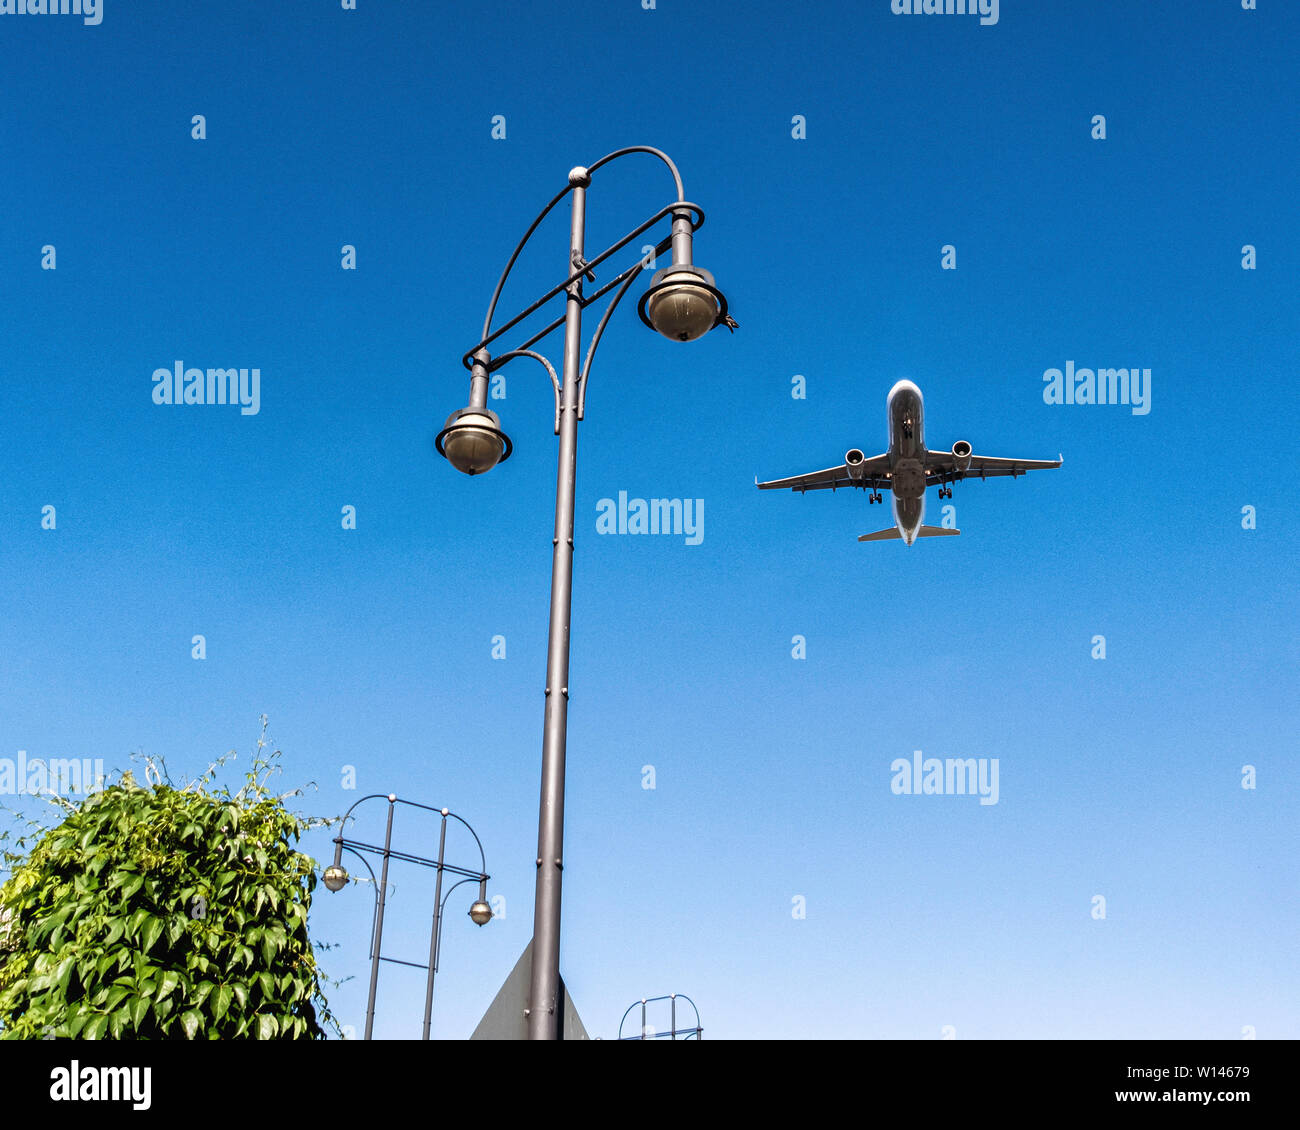 Flugzeug in der Luft über Kurt Schumacher Platz. Flugzeug nähert sich der  Flughafen Tegel & an, Berlin Stockfotografie - Alamy